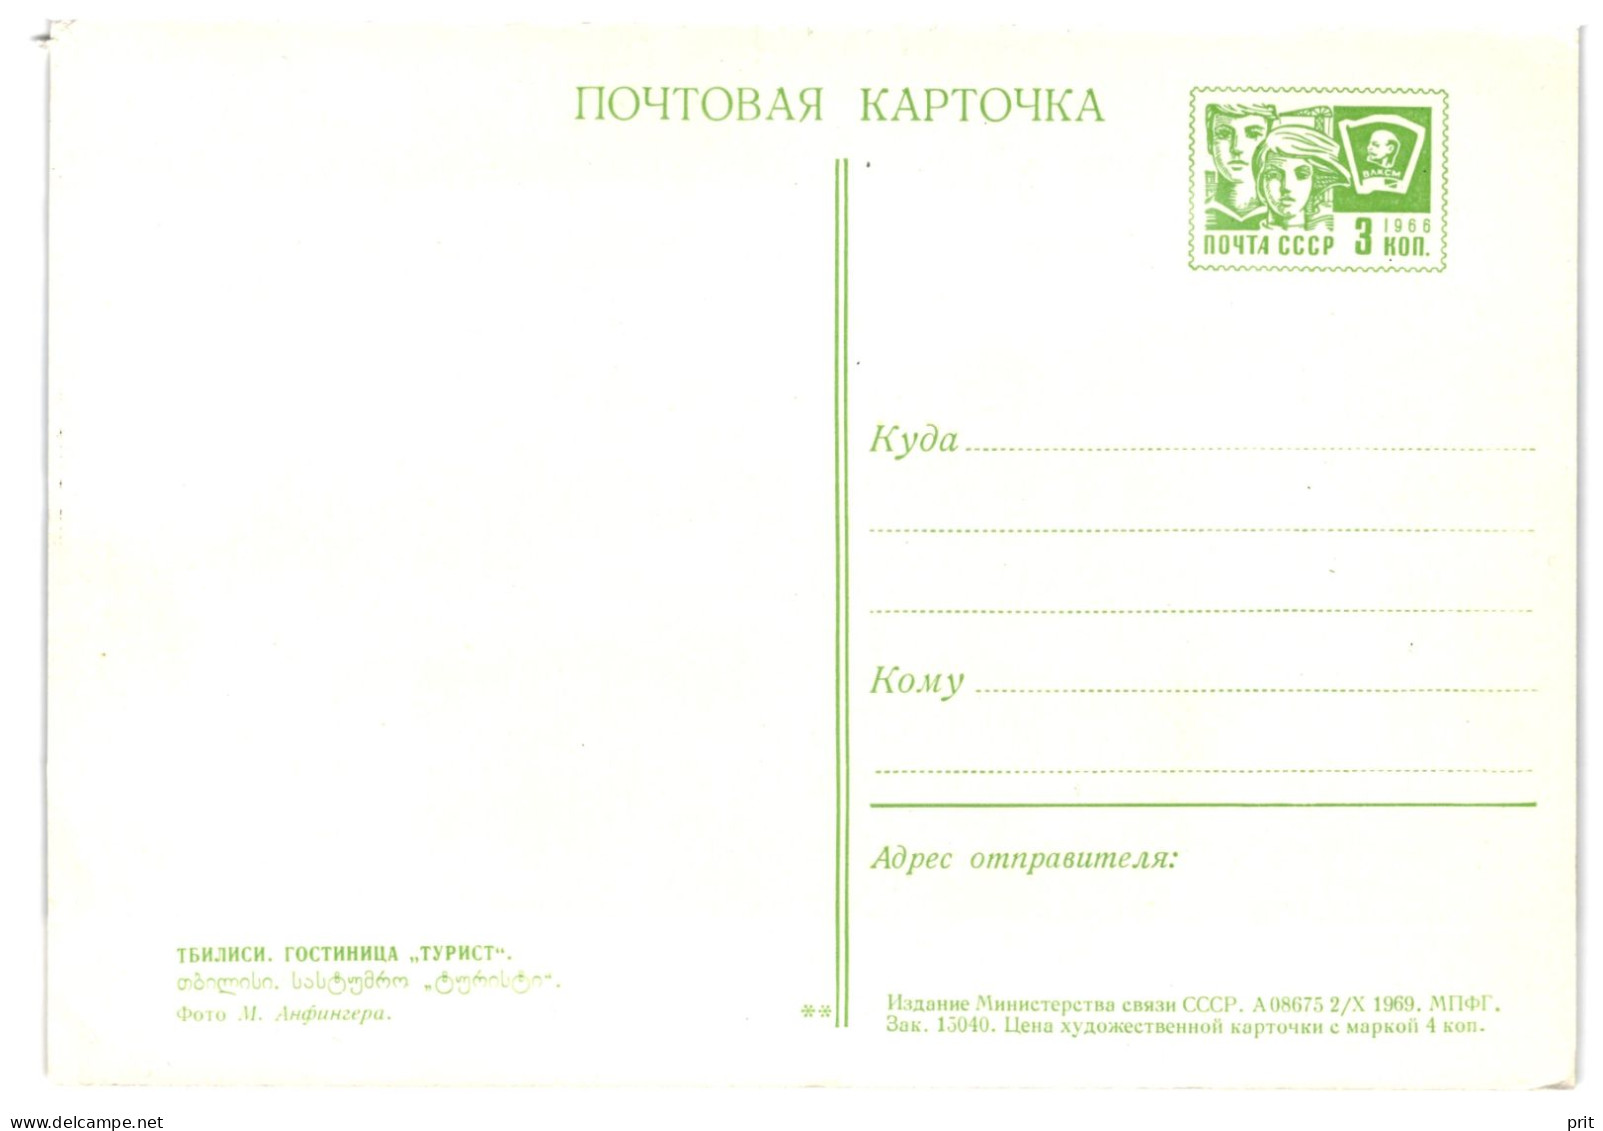 Hotel Turist, Tbilisi Soviet Georgia USSR 1969 3Kop Stamped Postal Stationery Card Postcard Unused - 1960-69